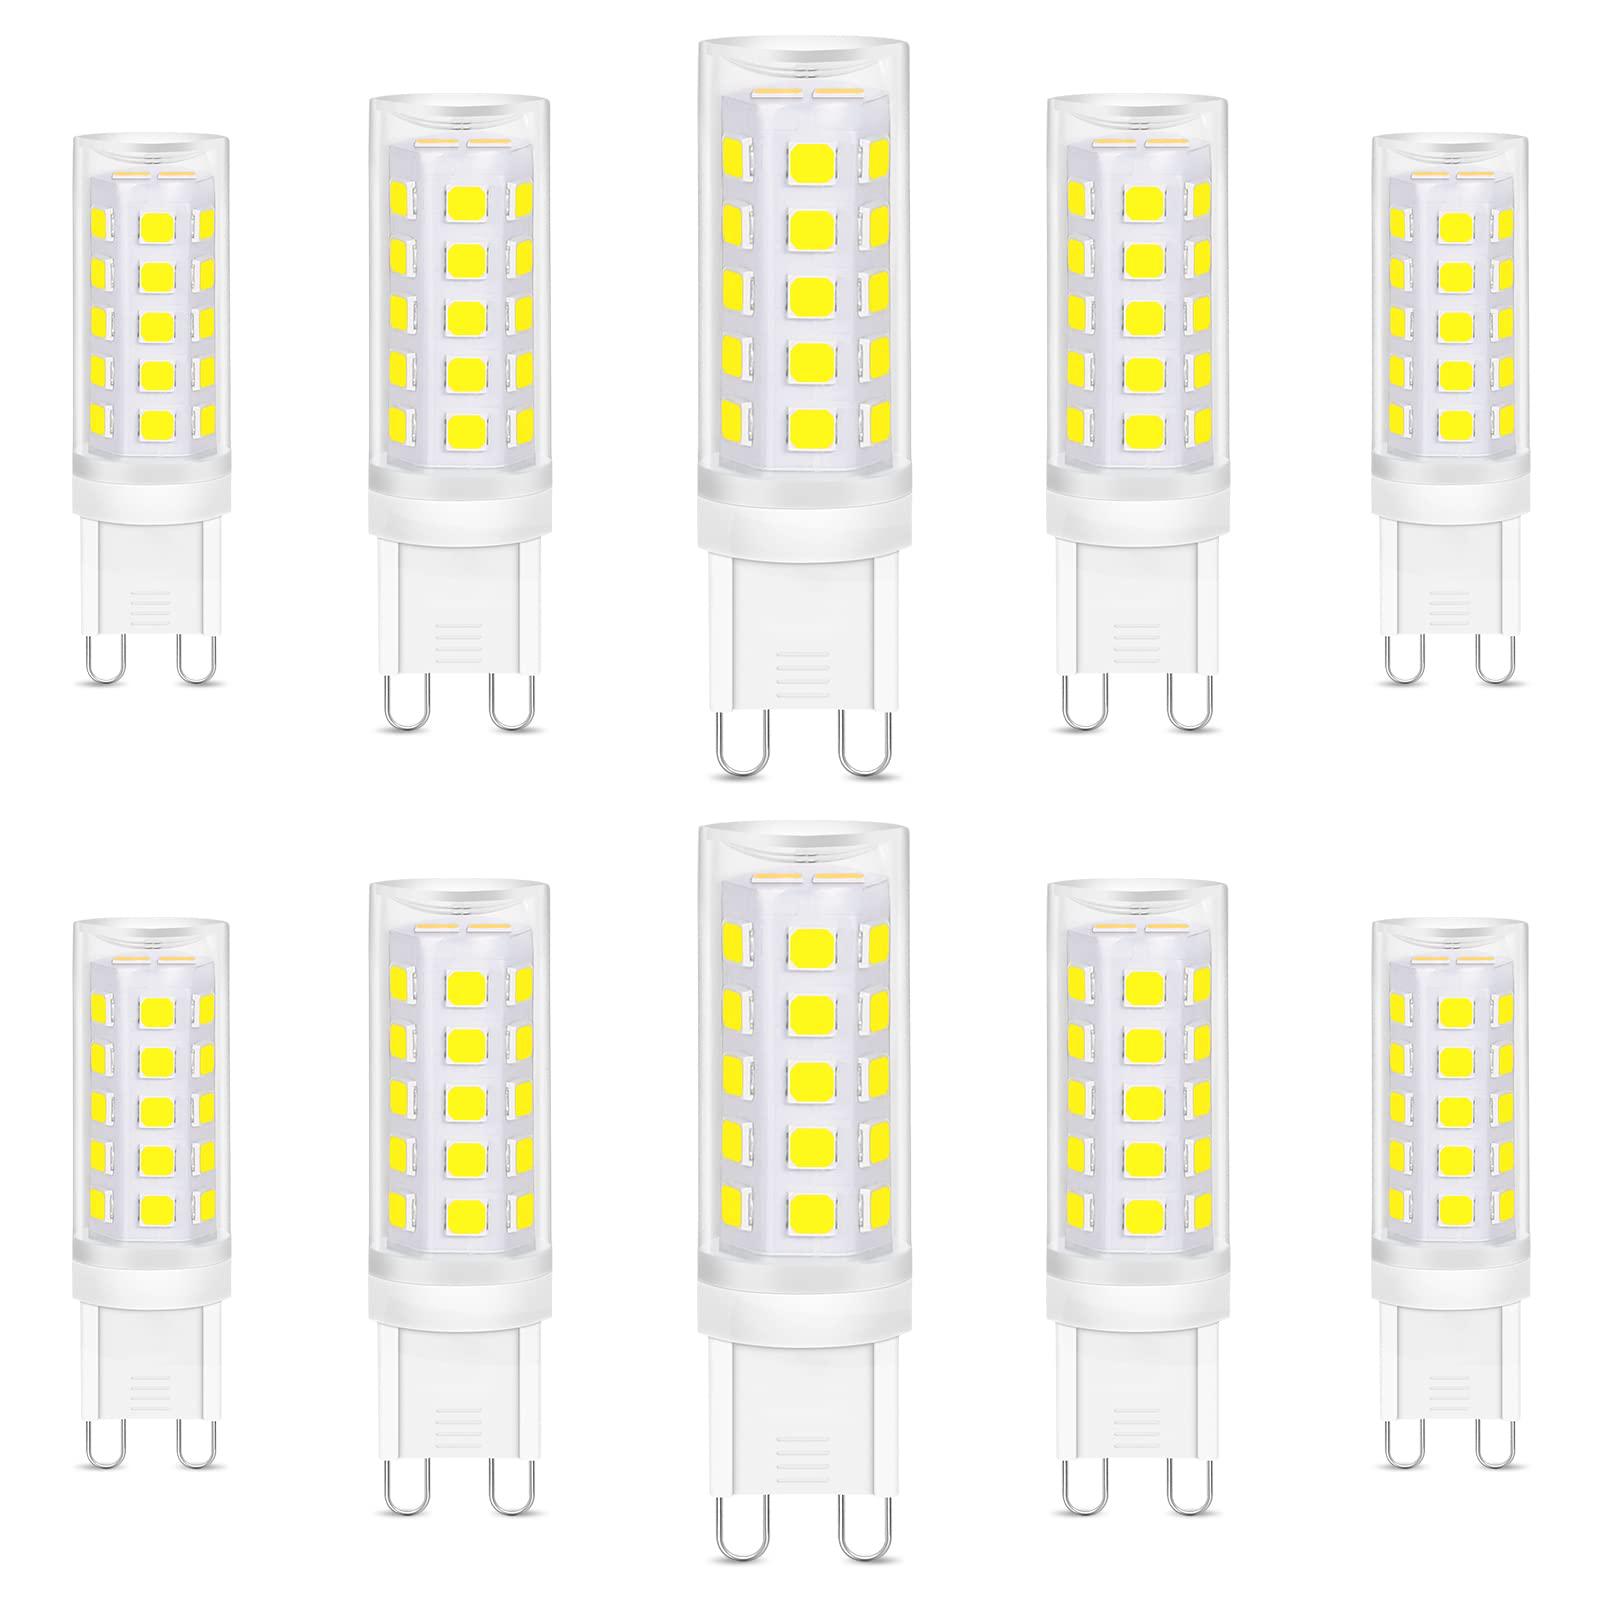 LIgHTNUM lightnum g9 led light bulbs, 10 pack 6000k daylight white led bulbs, 30 watt halogen lamp equivalent, ceramic pin base, no